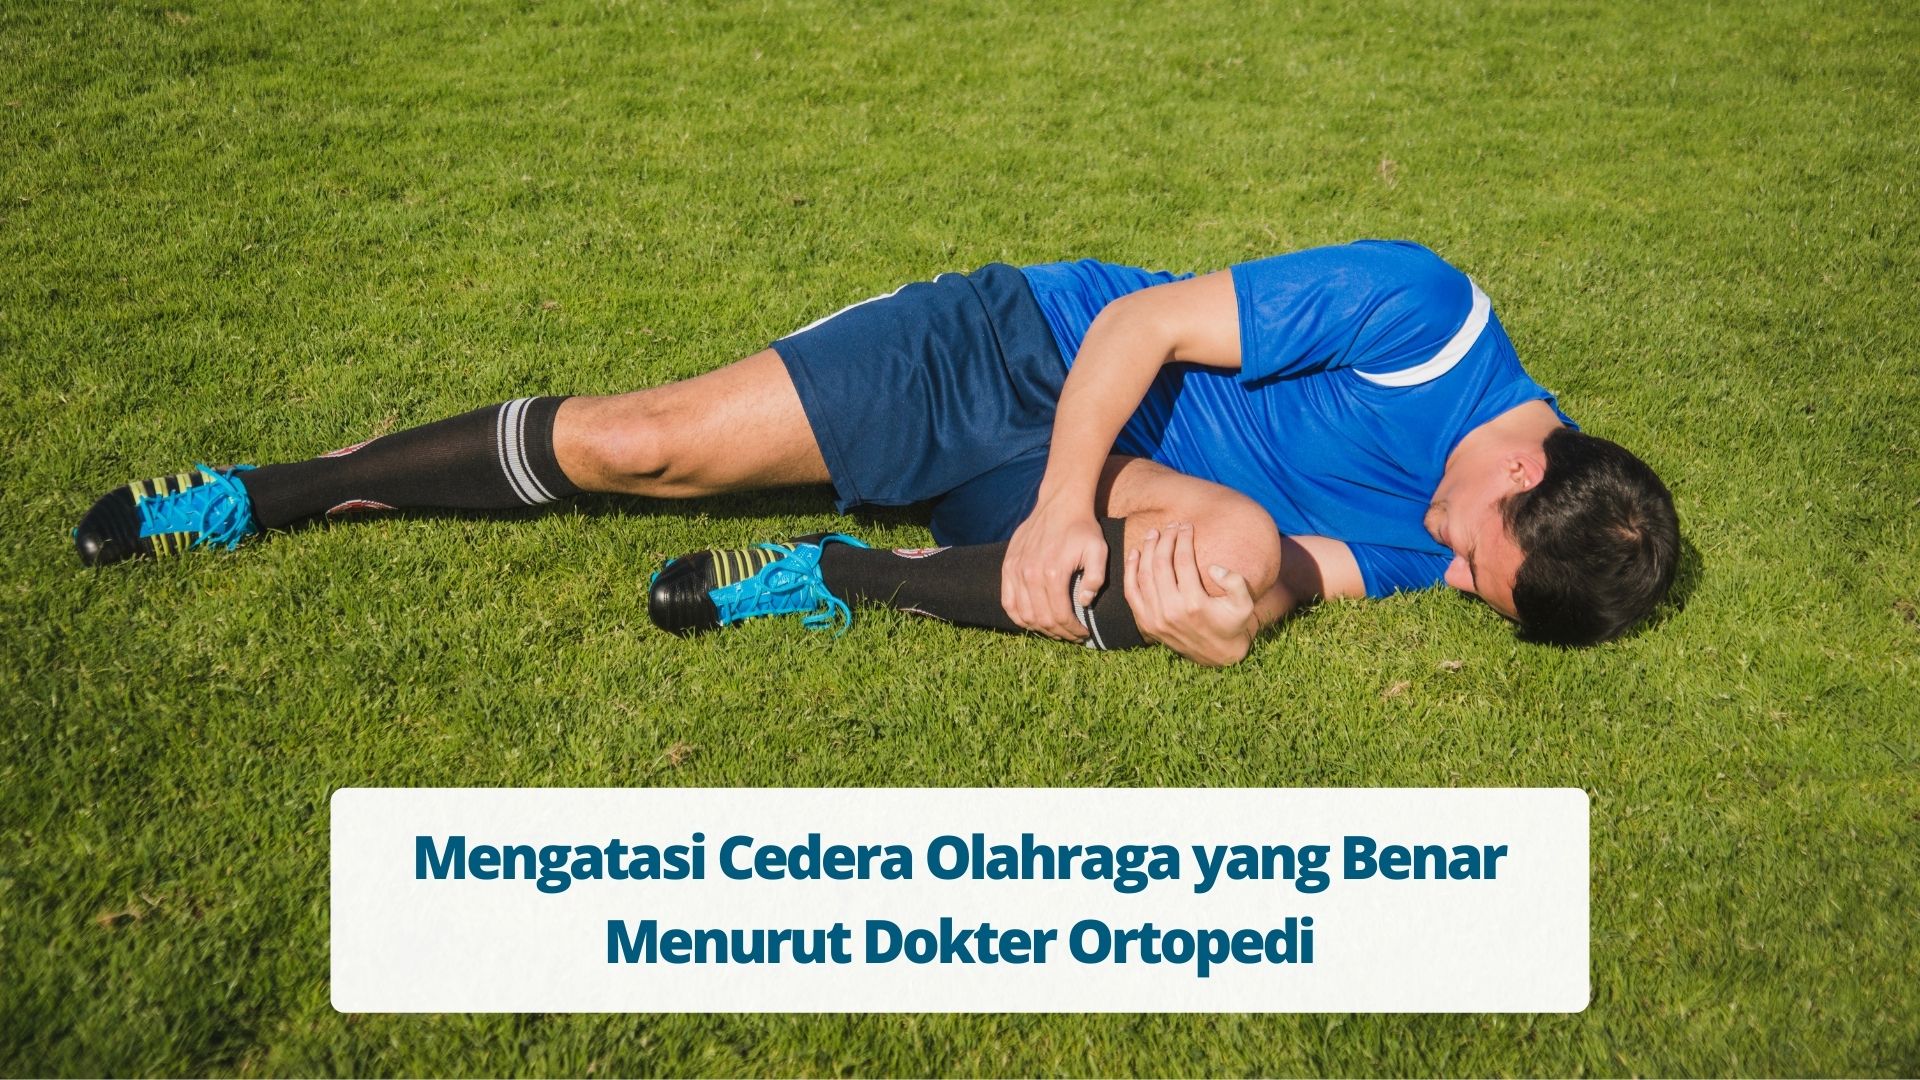 Mengatasi Cedera Olahraga yang Benar Menurut Dokter Ortopedi